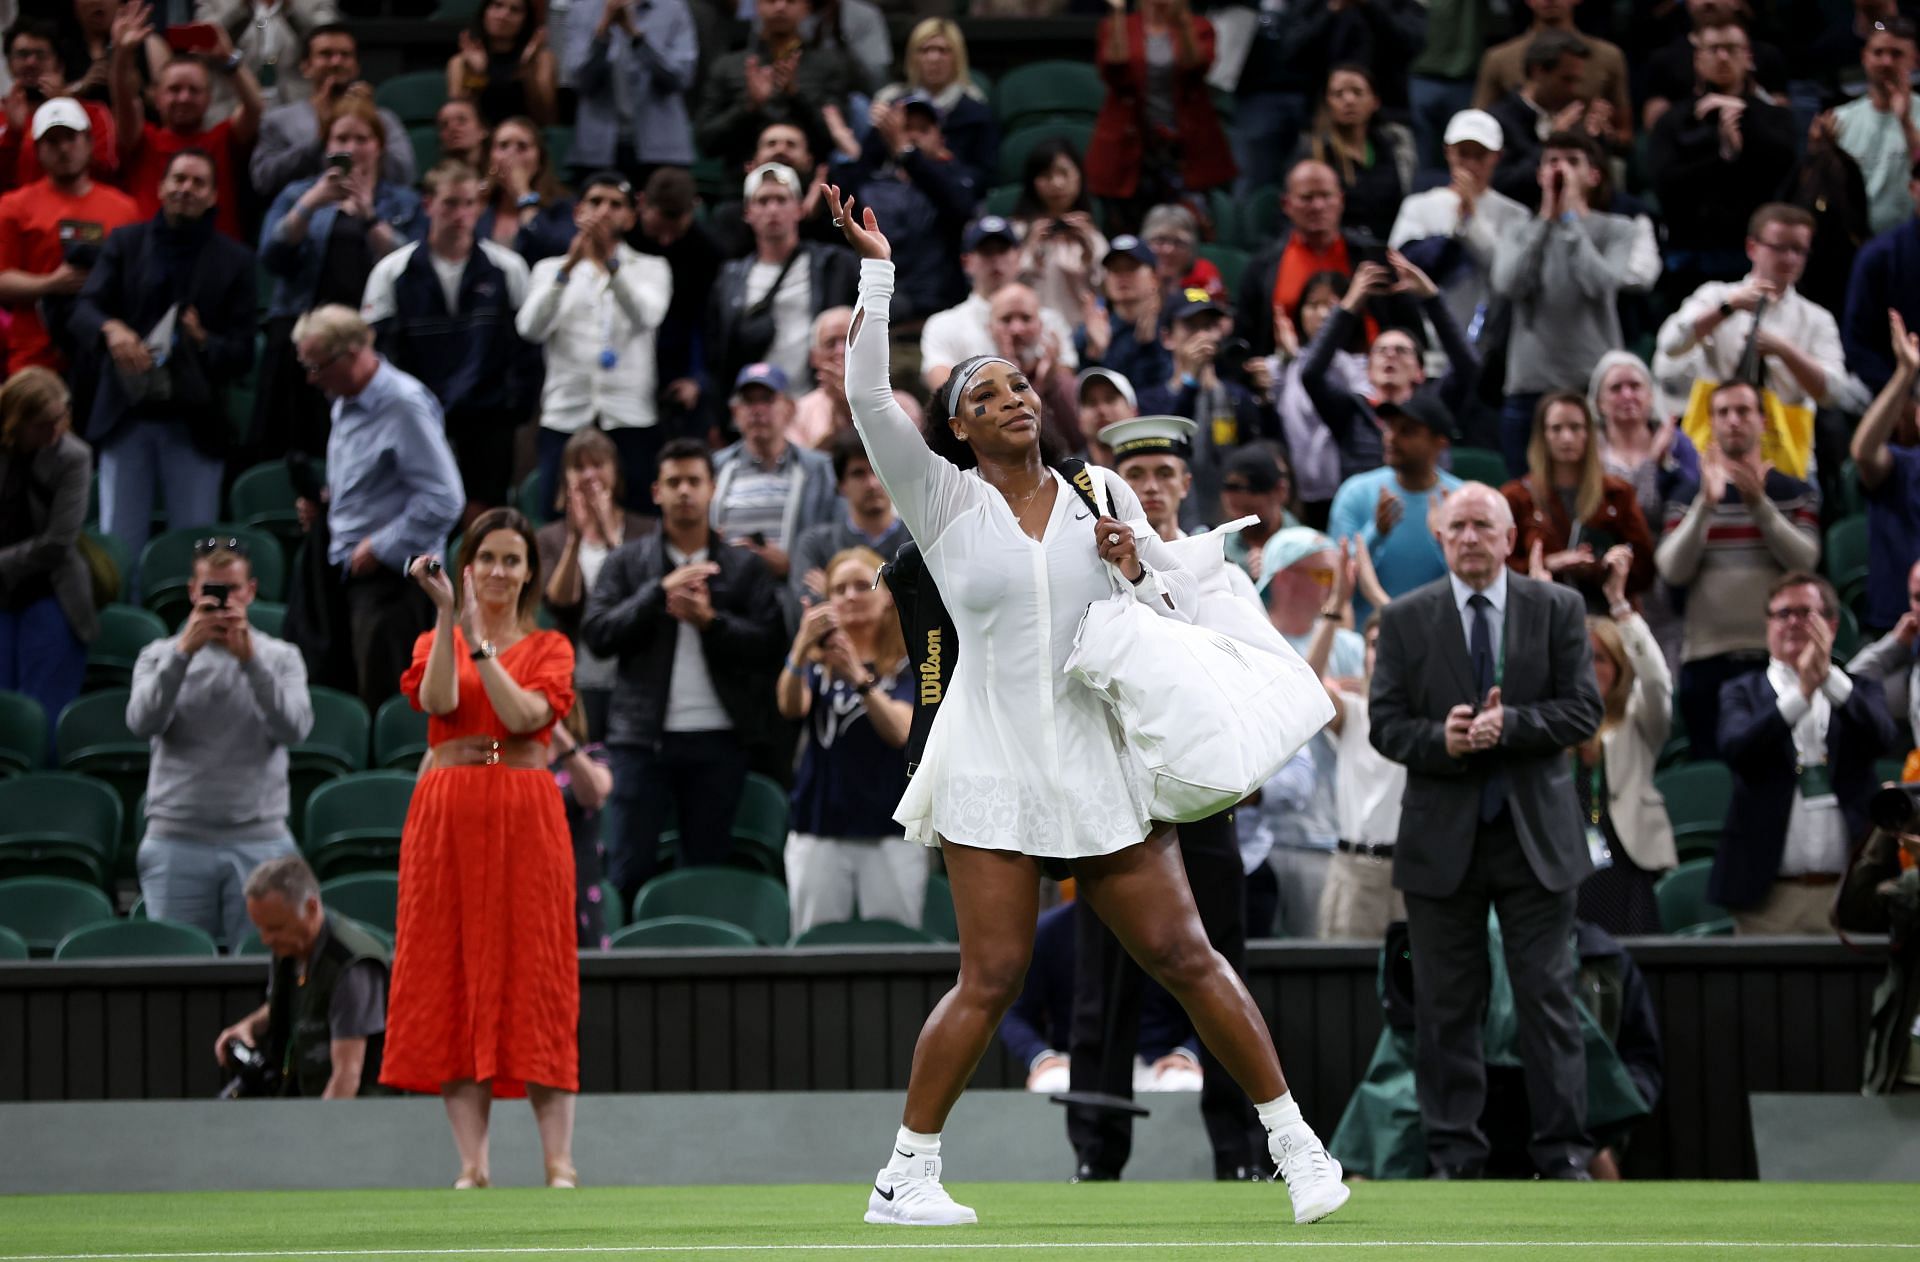 Serena Williams after her final Wimbledon match